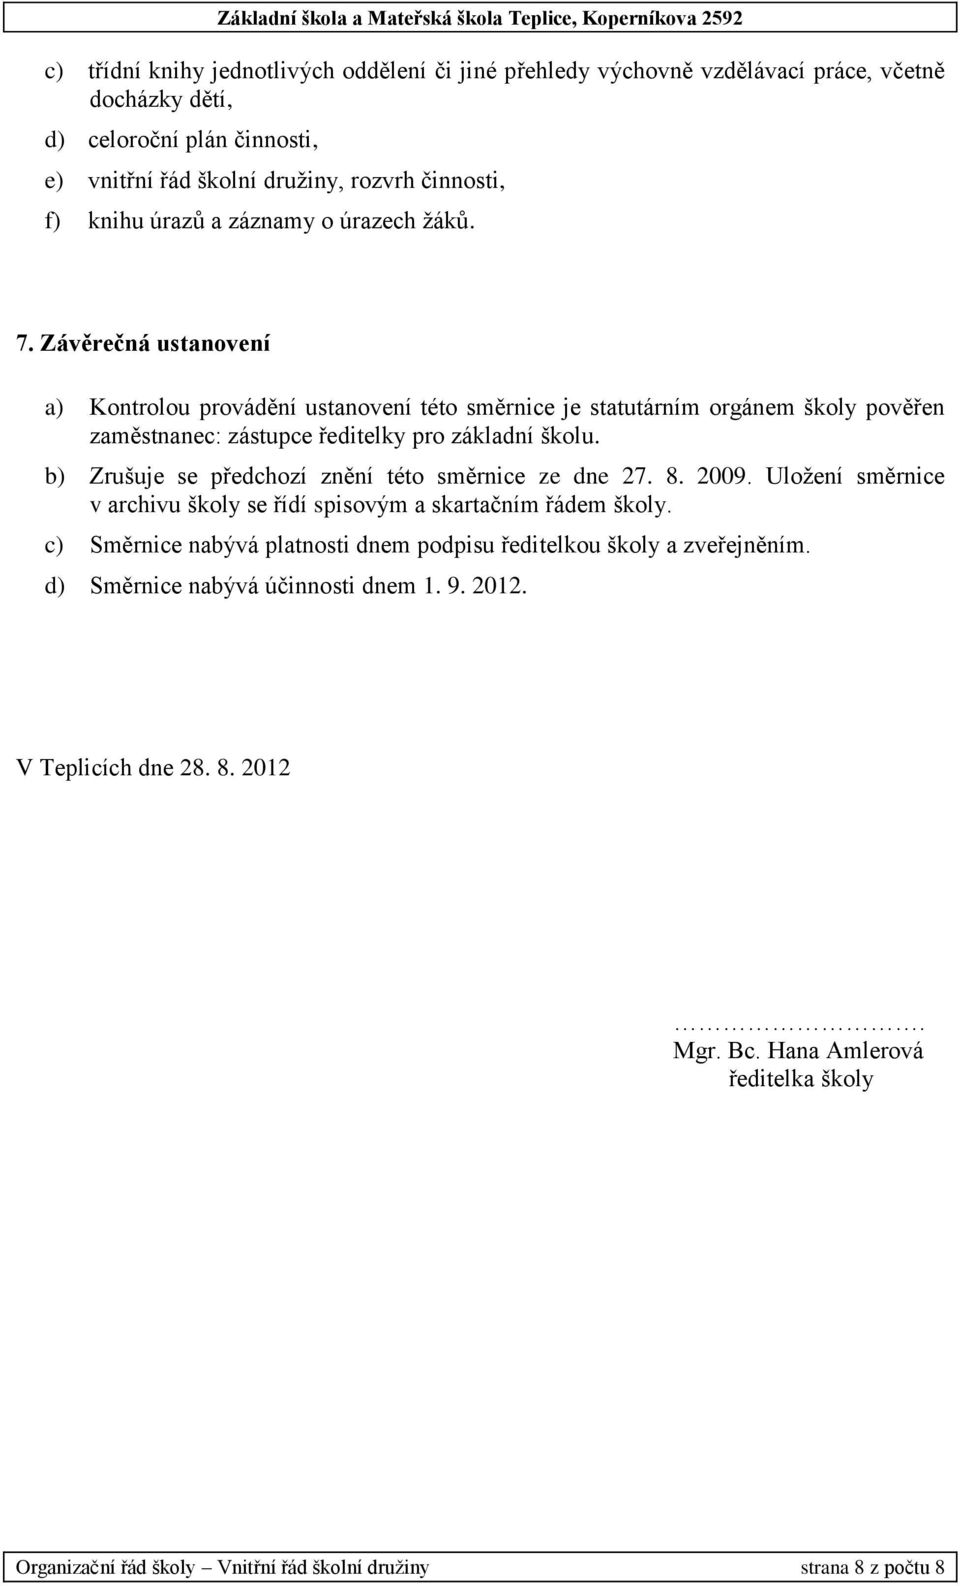 b) Zrušuje se předchozí znění této směrnice ze dne 27. 8. 2009. Uložení směrnice v archivu školy se řídí spisovým a skartačním řádem školy.